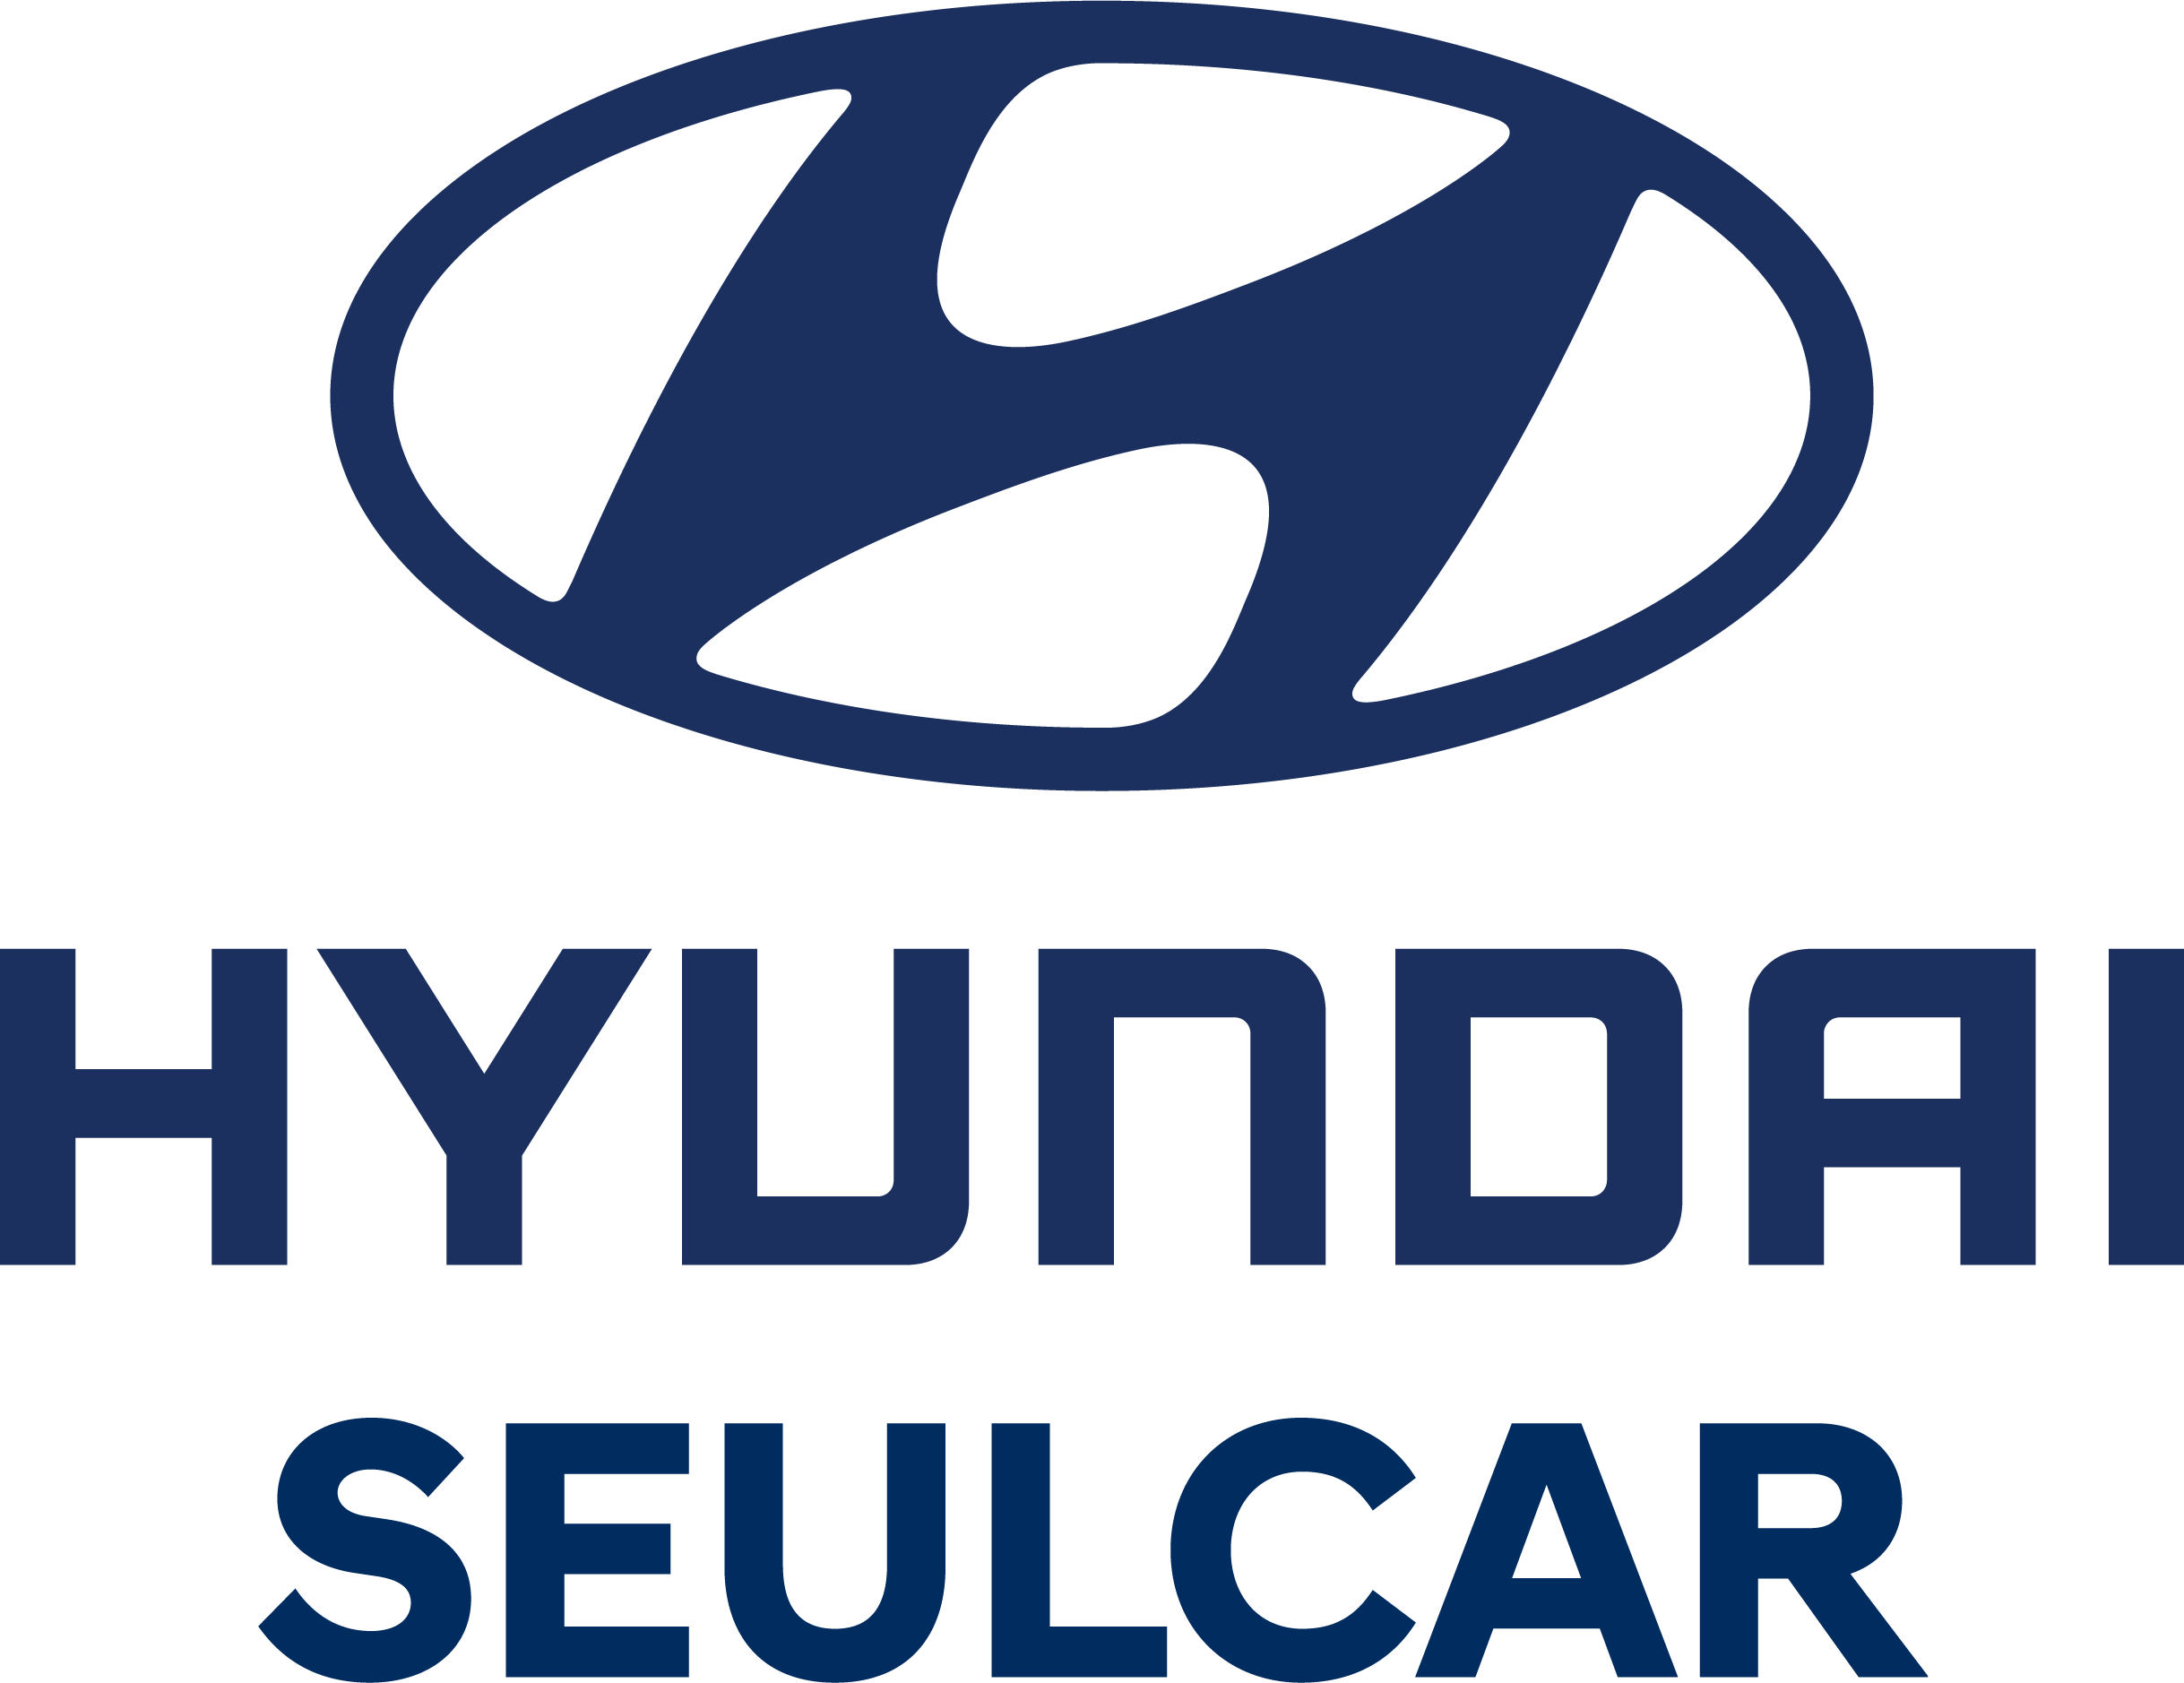 Hyundai Seulcar